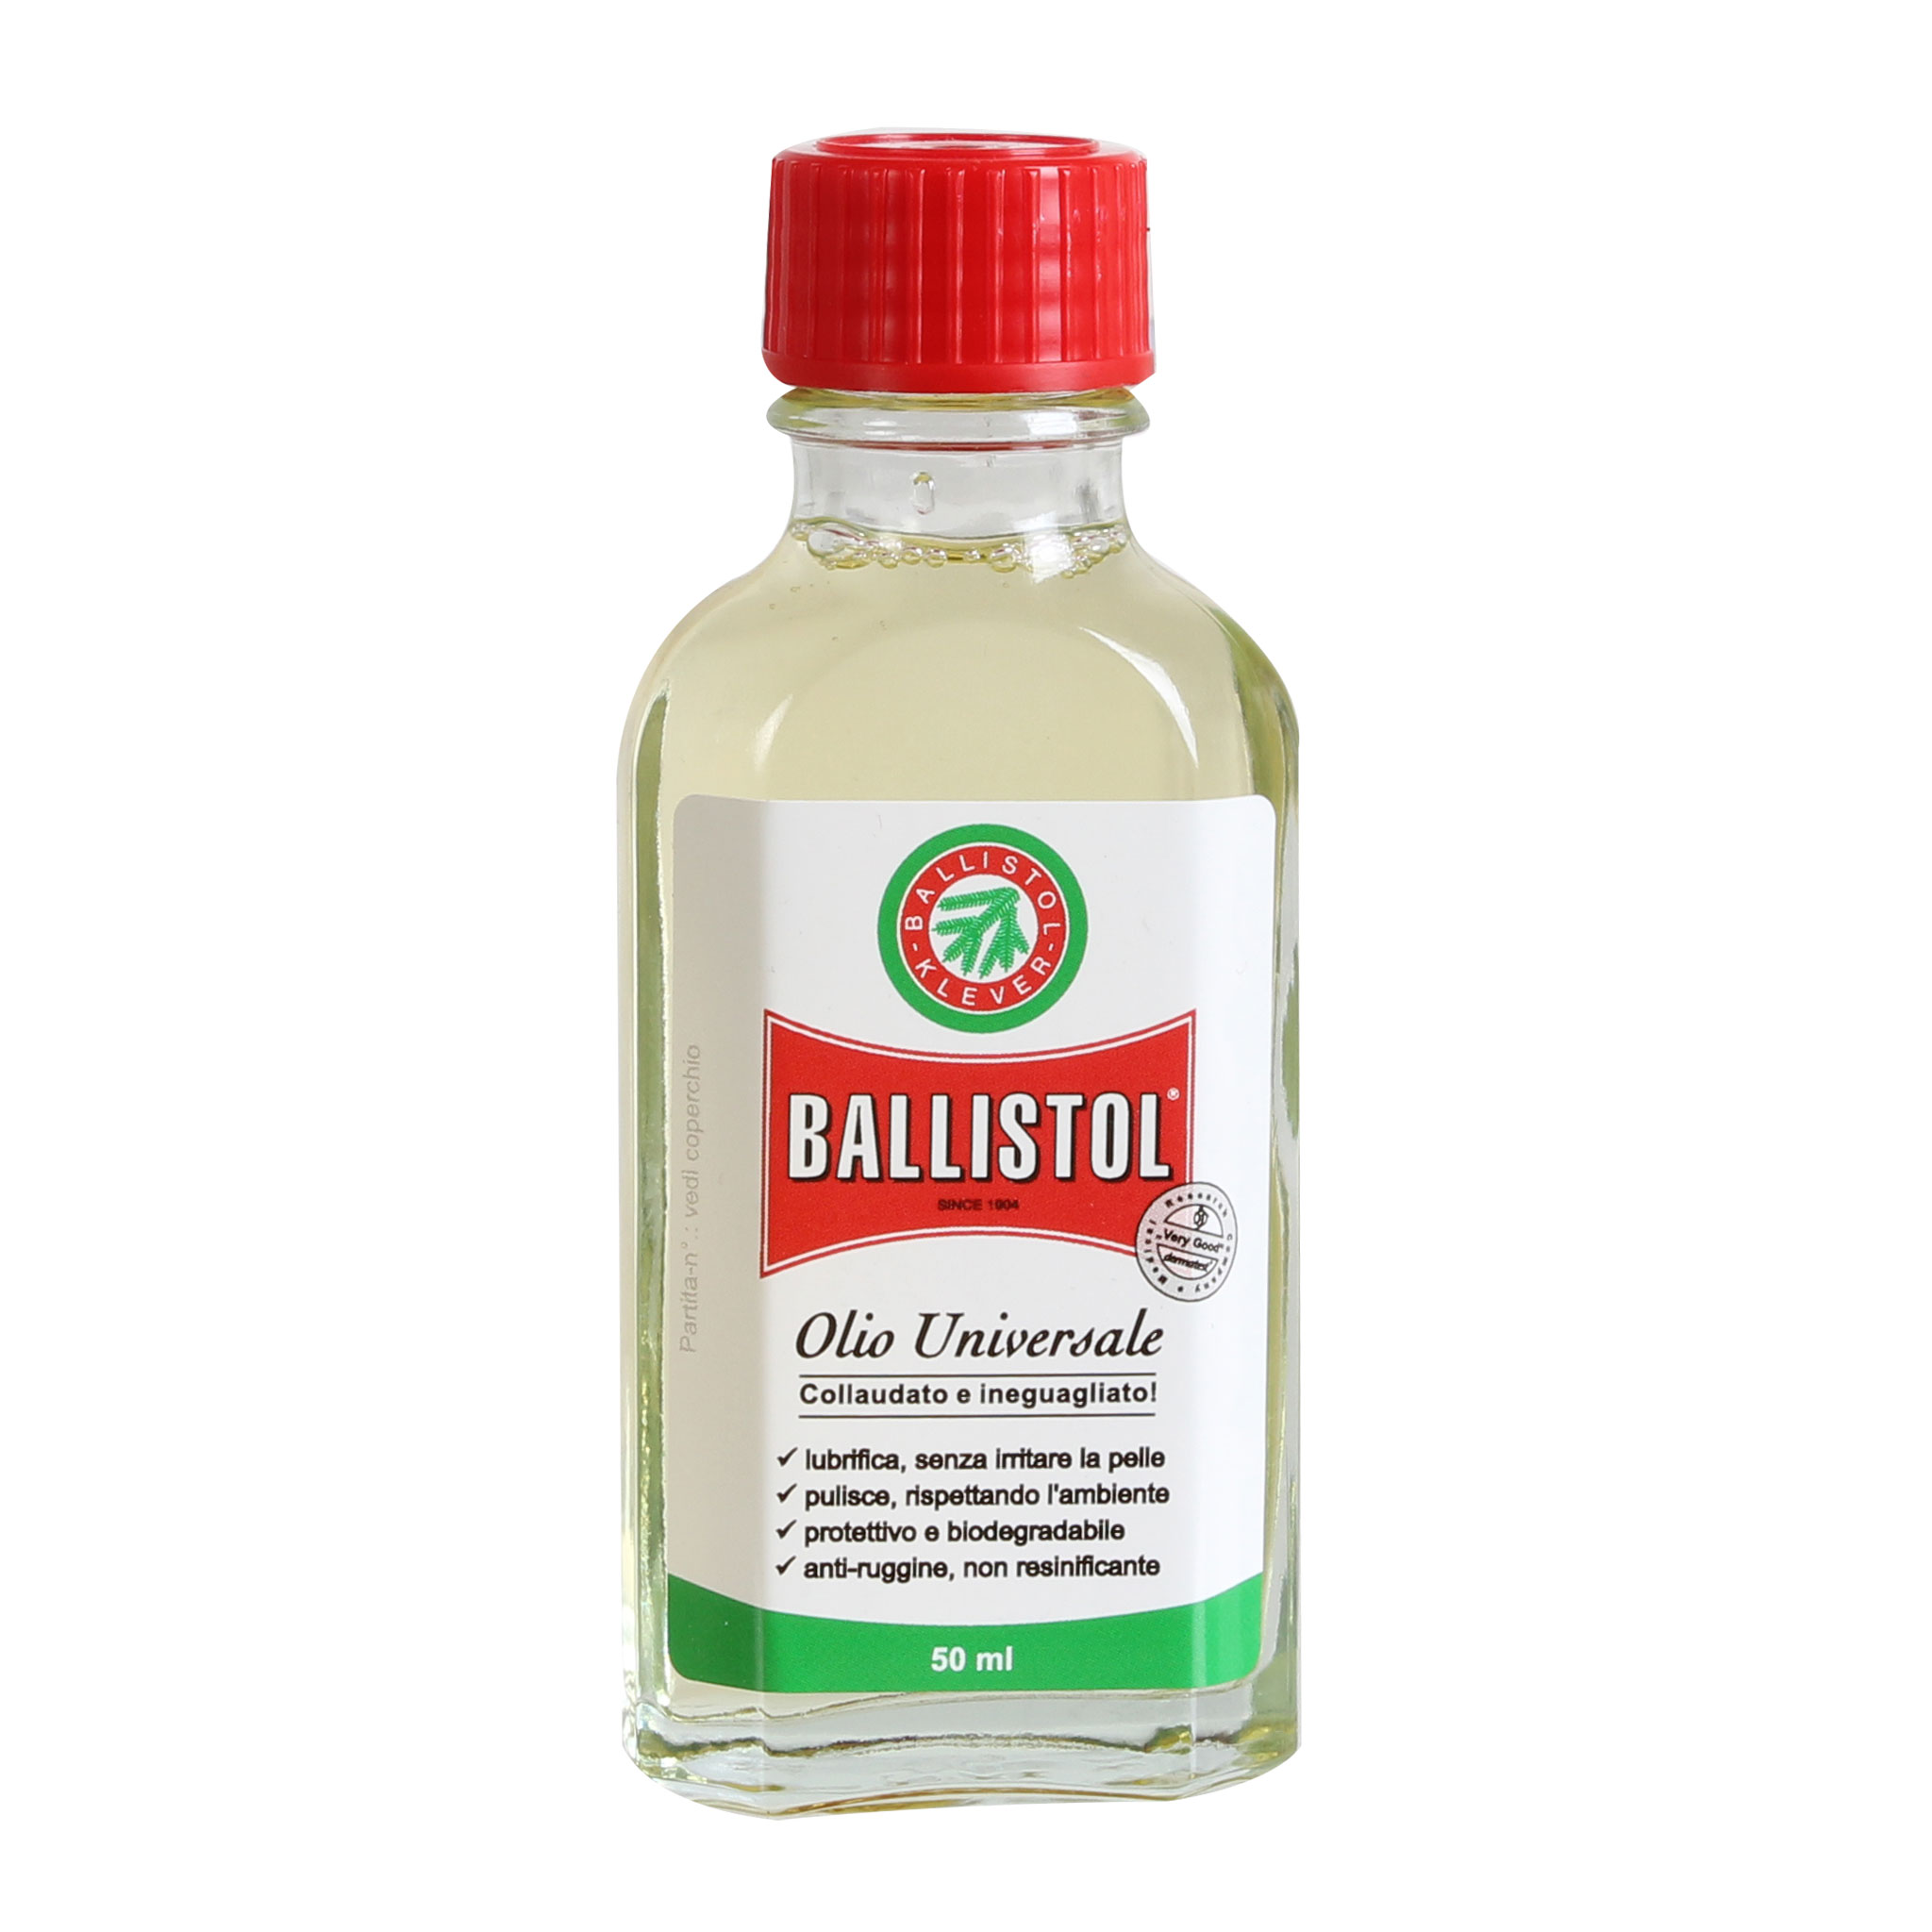 Formula Italy Ballistol Oil, 50ml